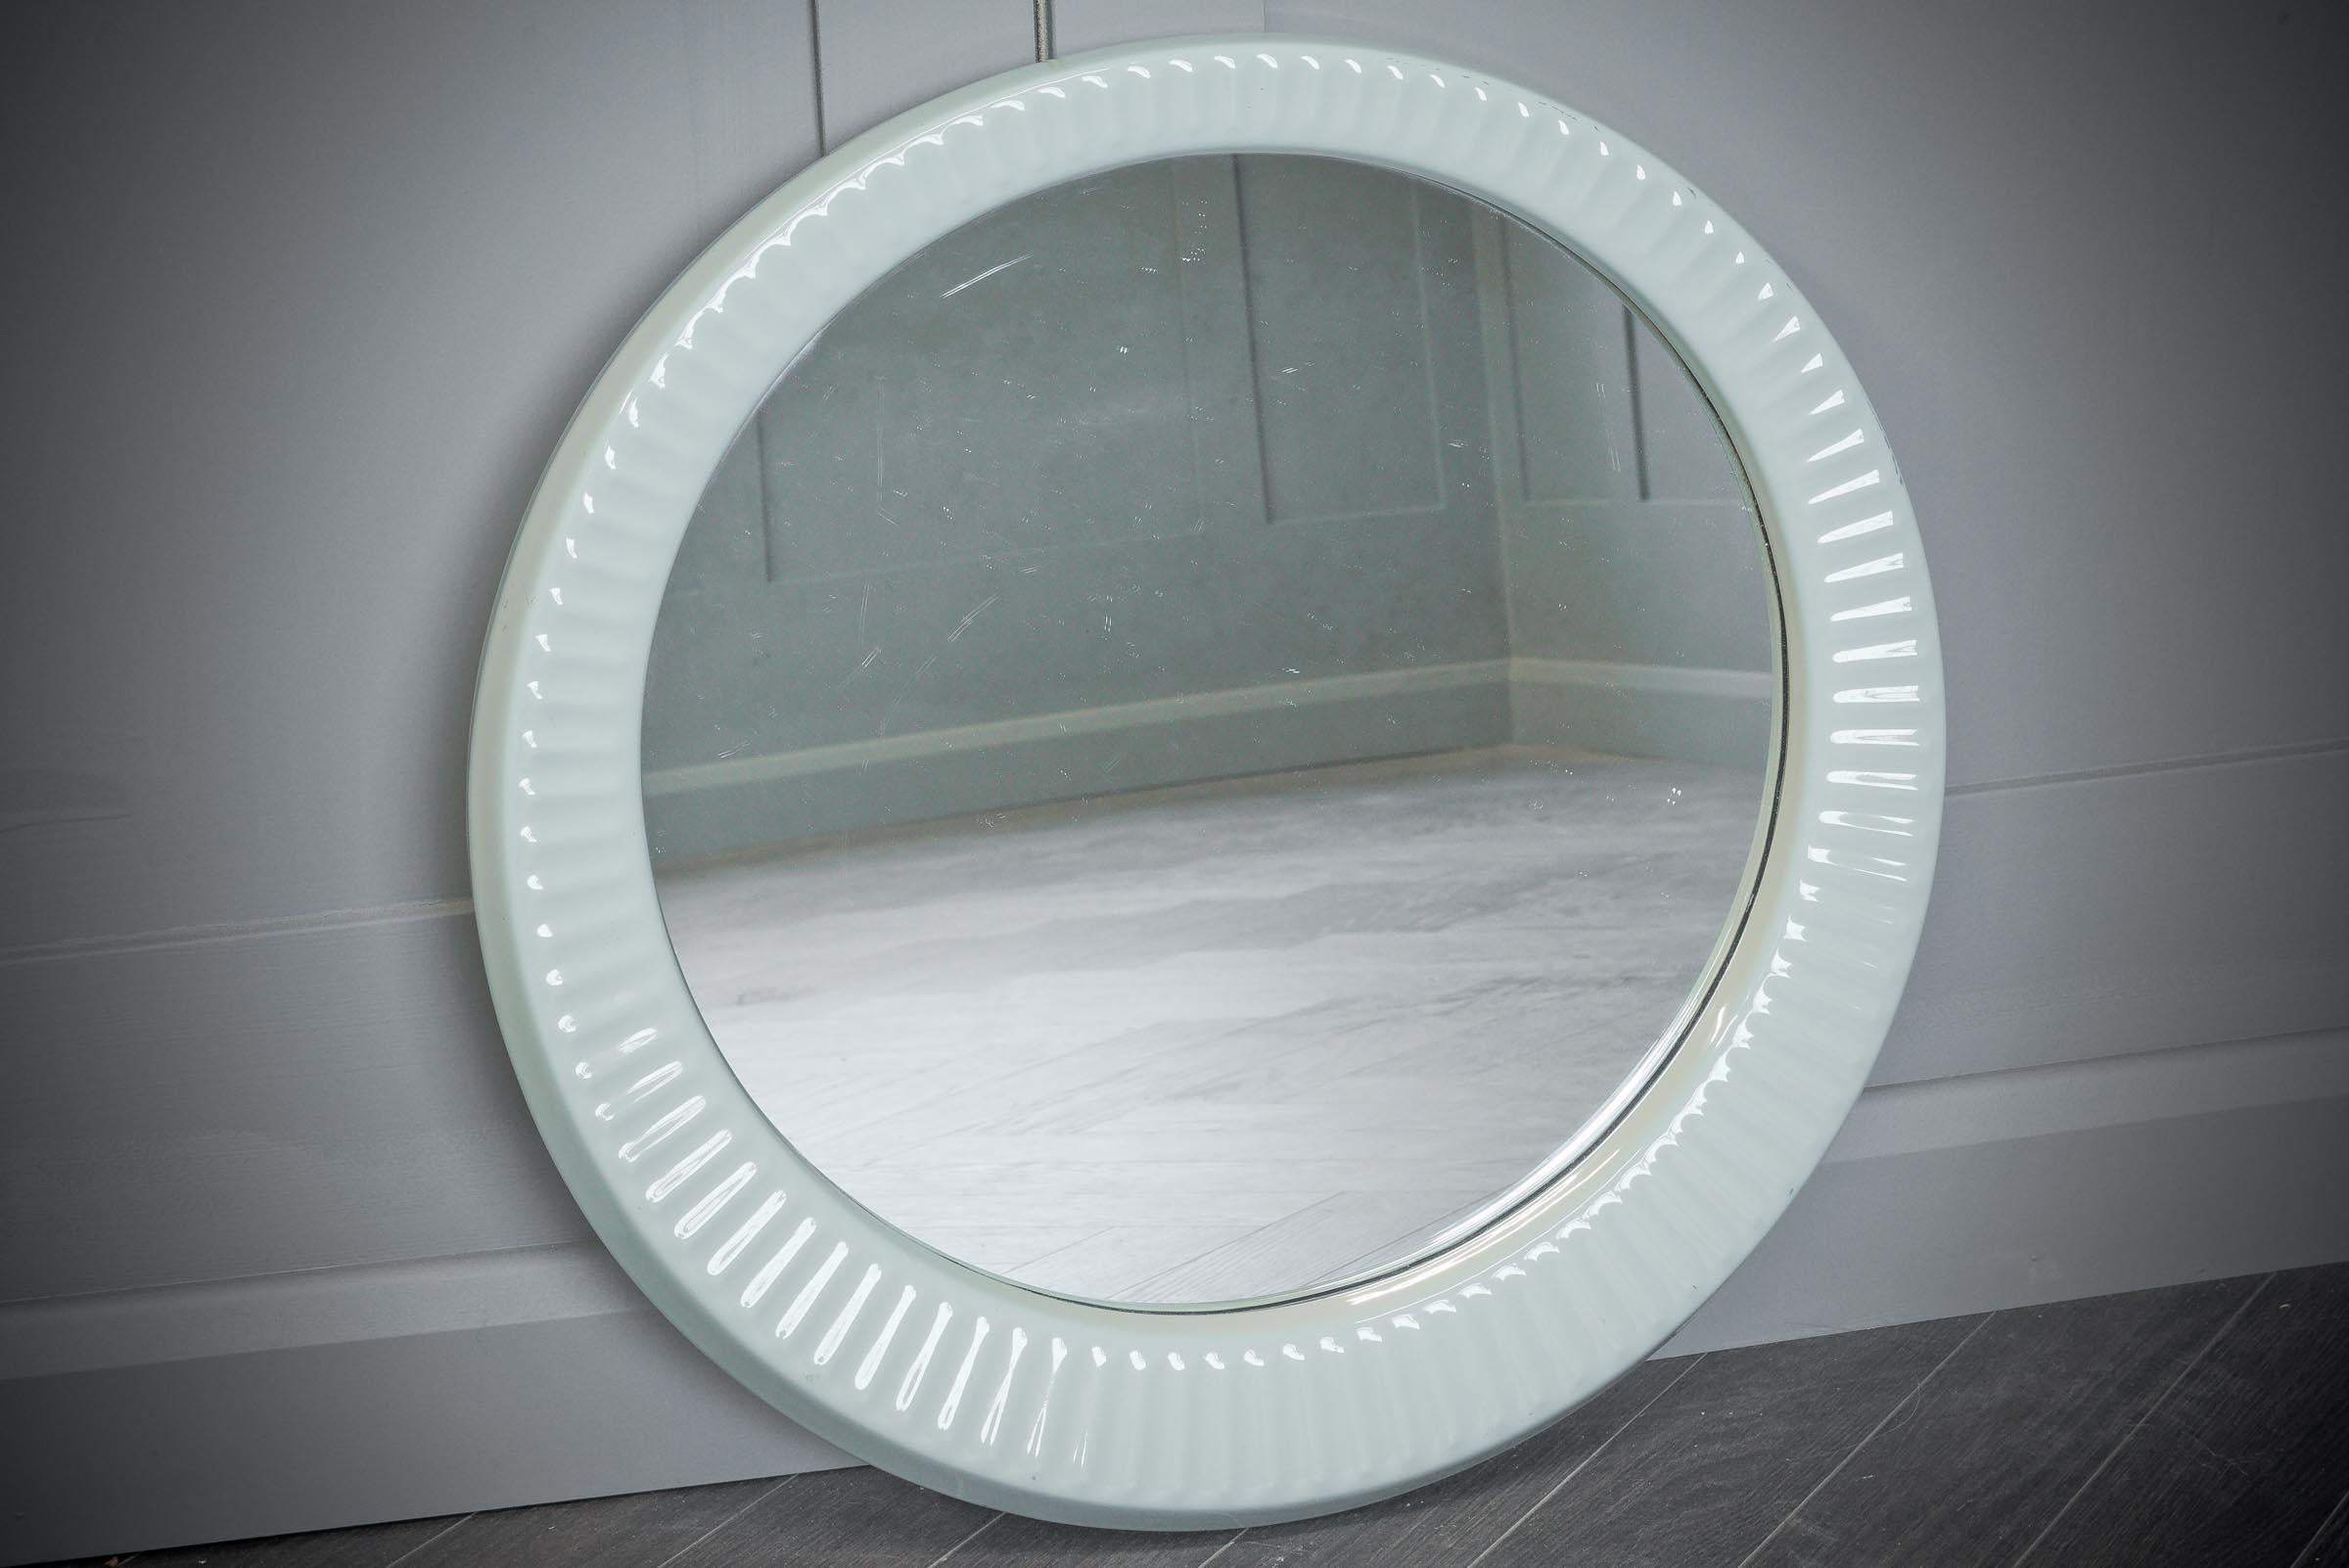 Ein wunderschöner ovaler Spiegel mit Keramikrahmen im Retro-Stil der 1970er Jahre von Twyfords, der jedem Badezimmer einen besonderen Charakter verleiht.